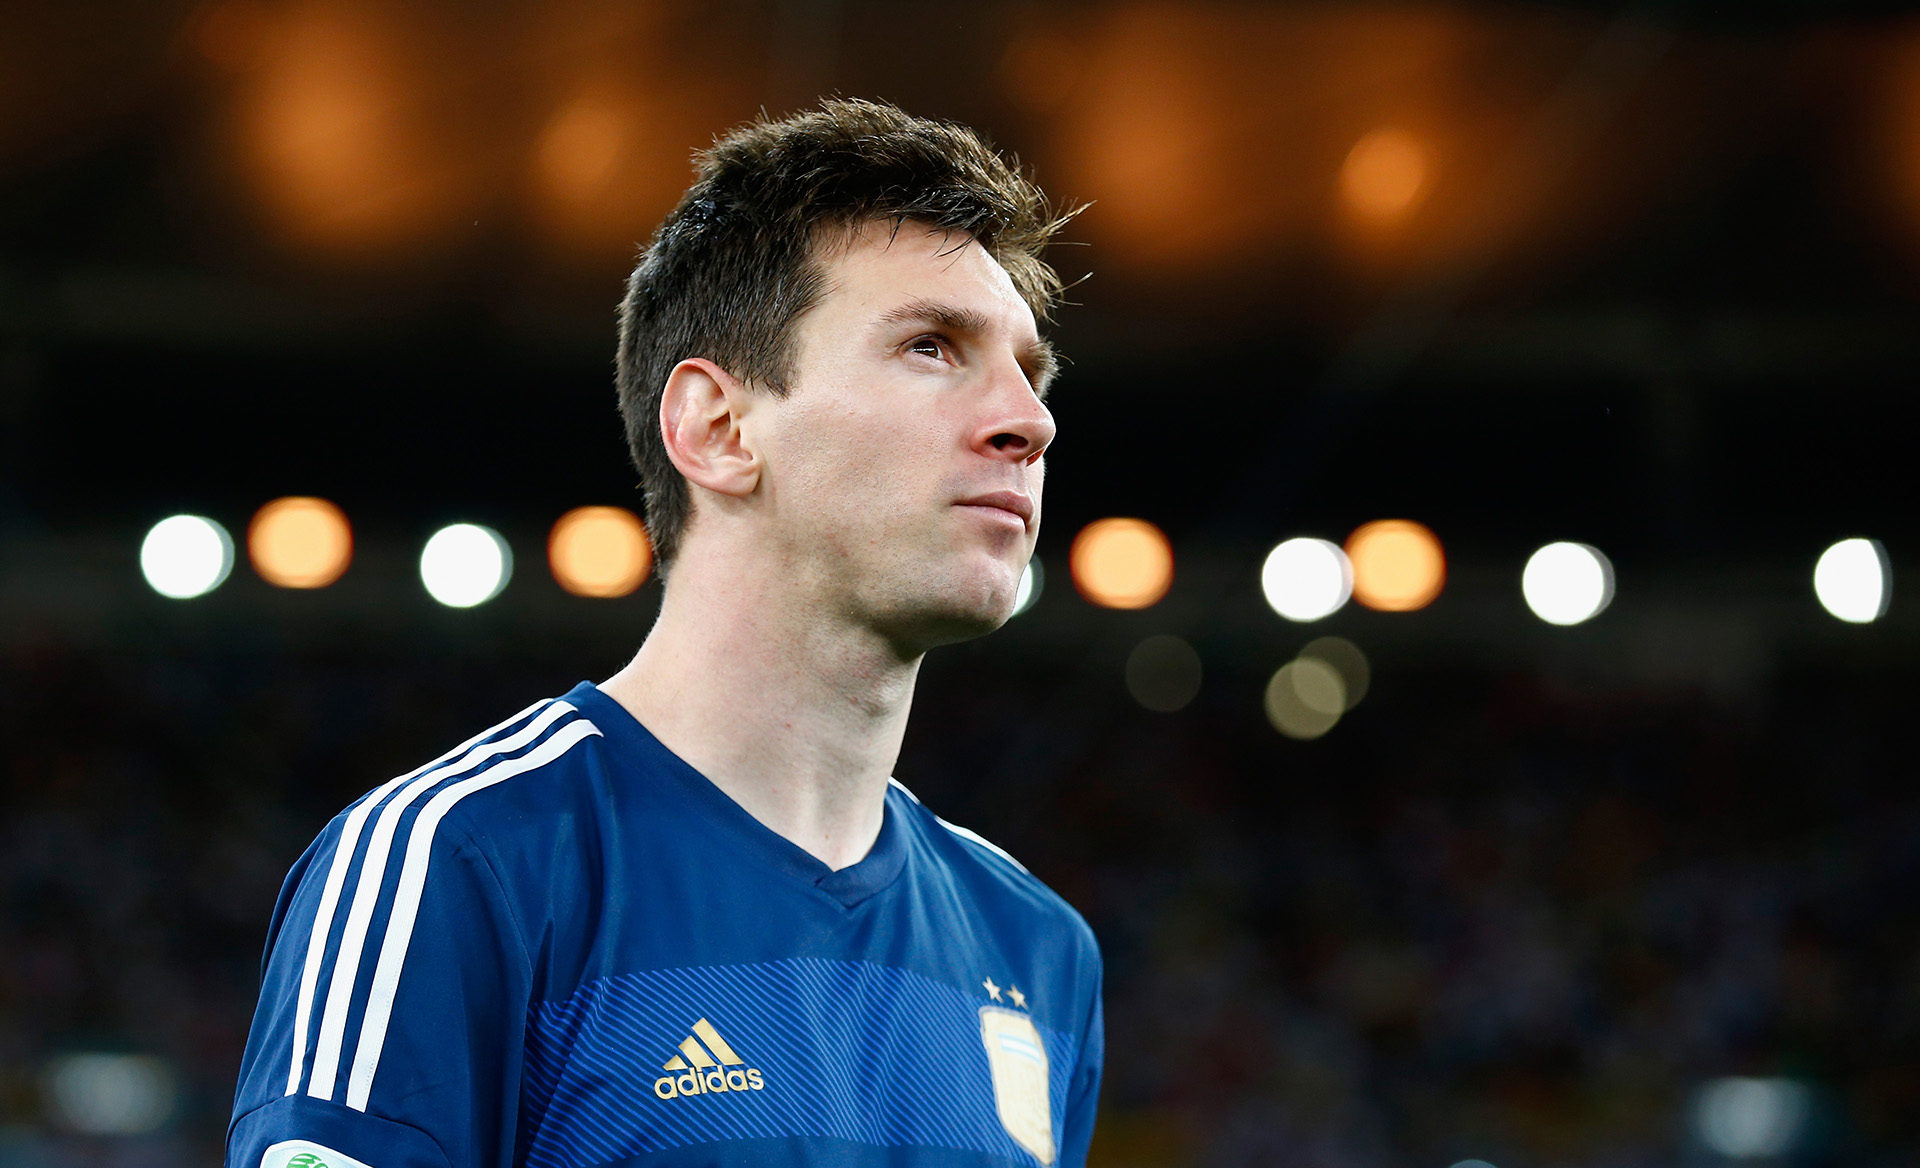 Los detalles de la remera que Lionel Messi lució para sumarse a la  selección argentina e hizo furor en las redes sociales: cuánto cuesta -  Infobae